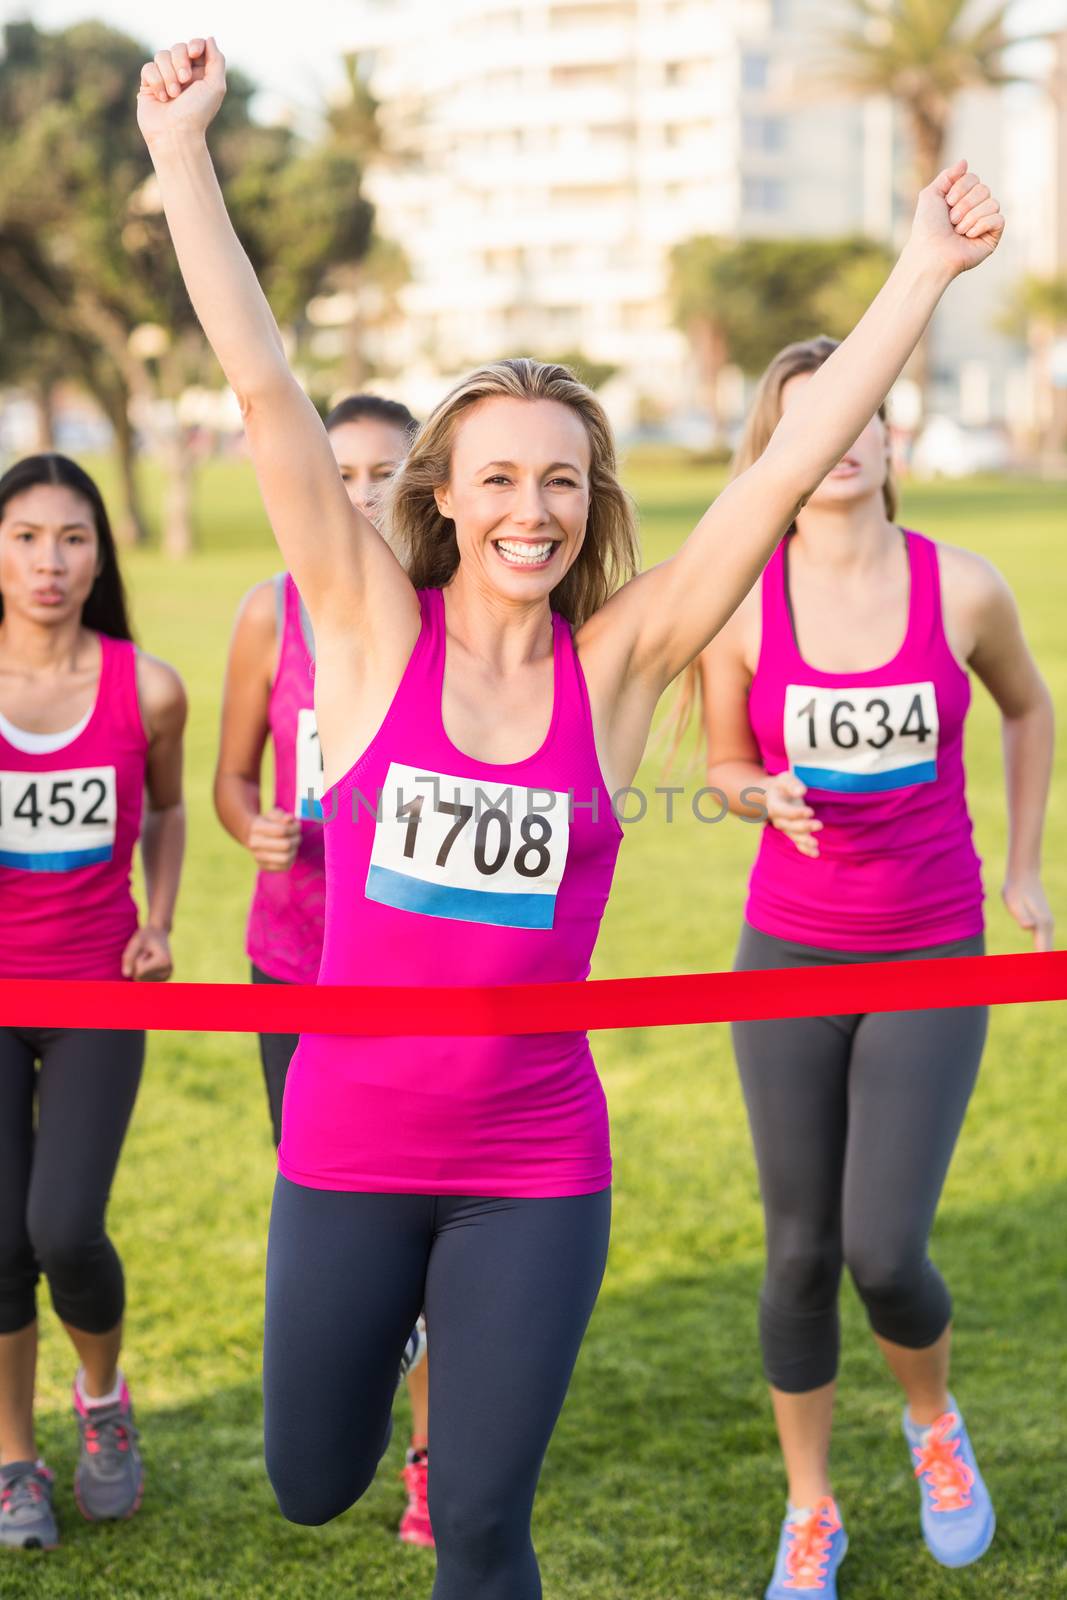 Cheering blonde winning breast cancer marathon by Wavebreakmedia